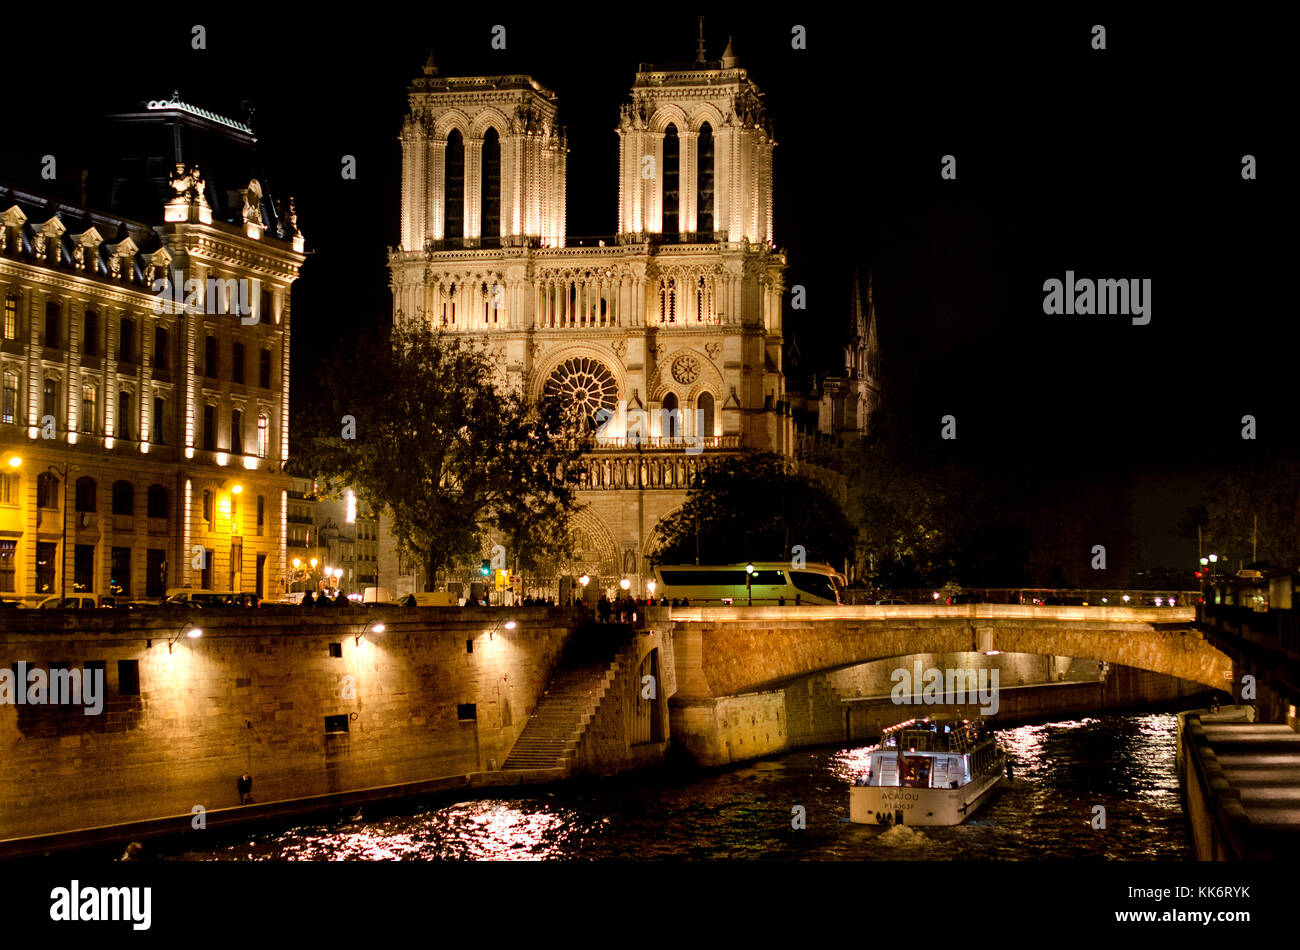 Paris, France. La cathédrale Notre-Dame / Notre-Dame de Paris sur l'île de la Cité. De style gothique. Lit up at night Banque D'Images